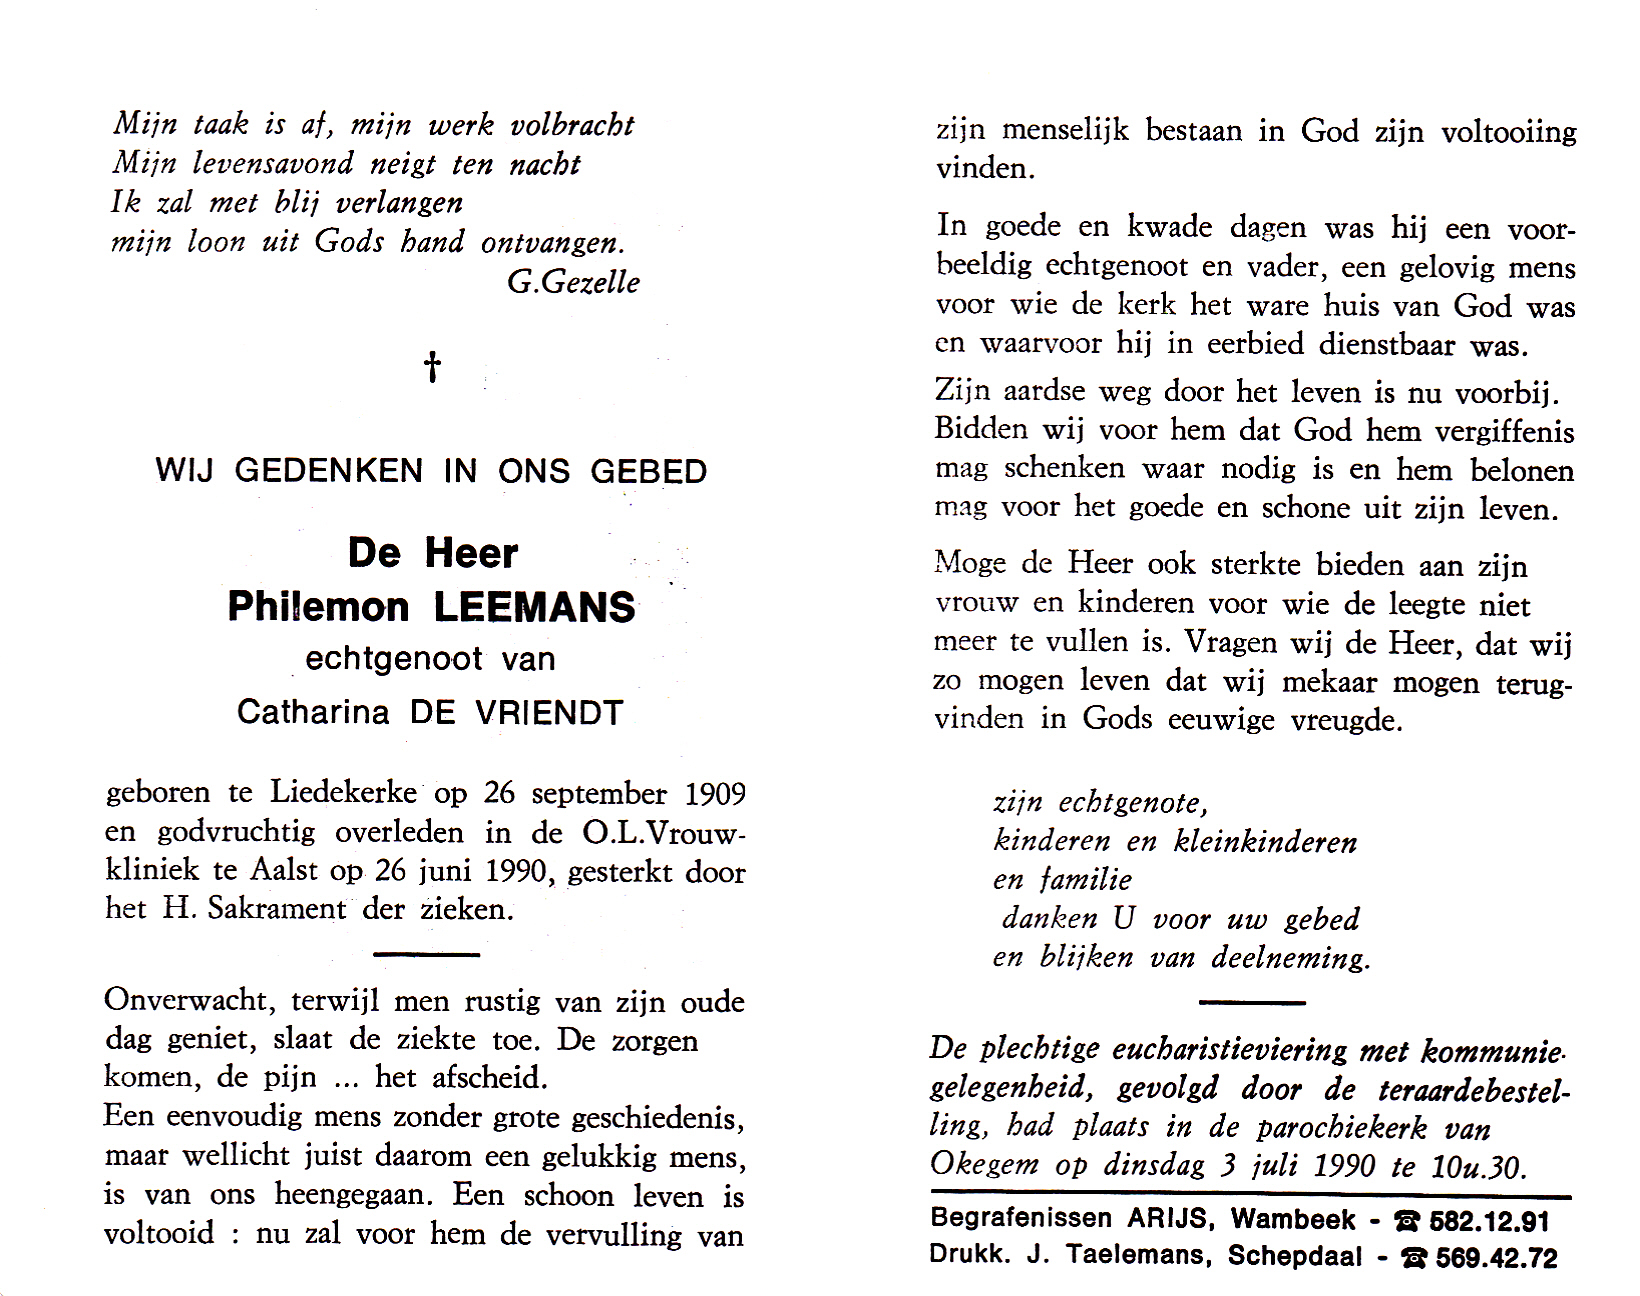 Leemans Philemon